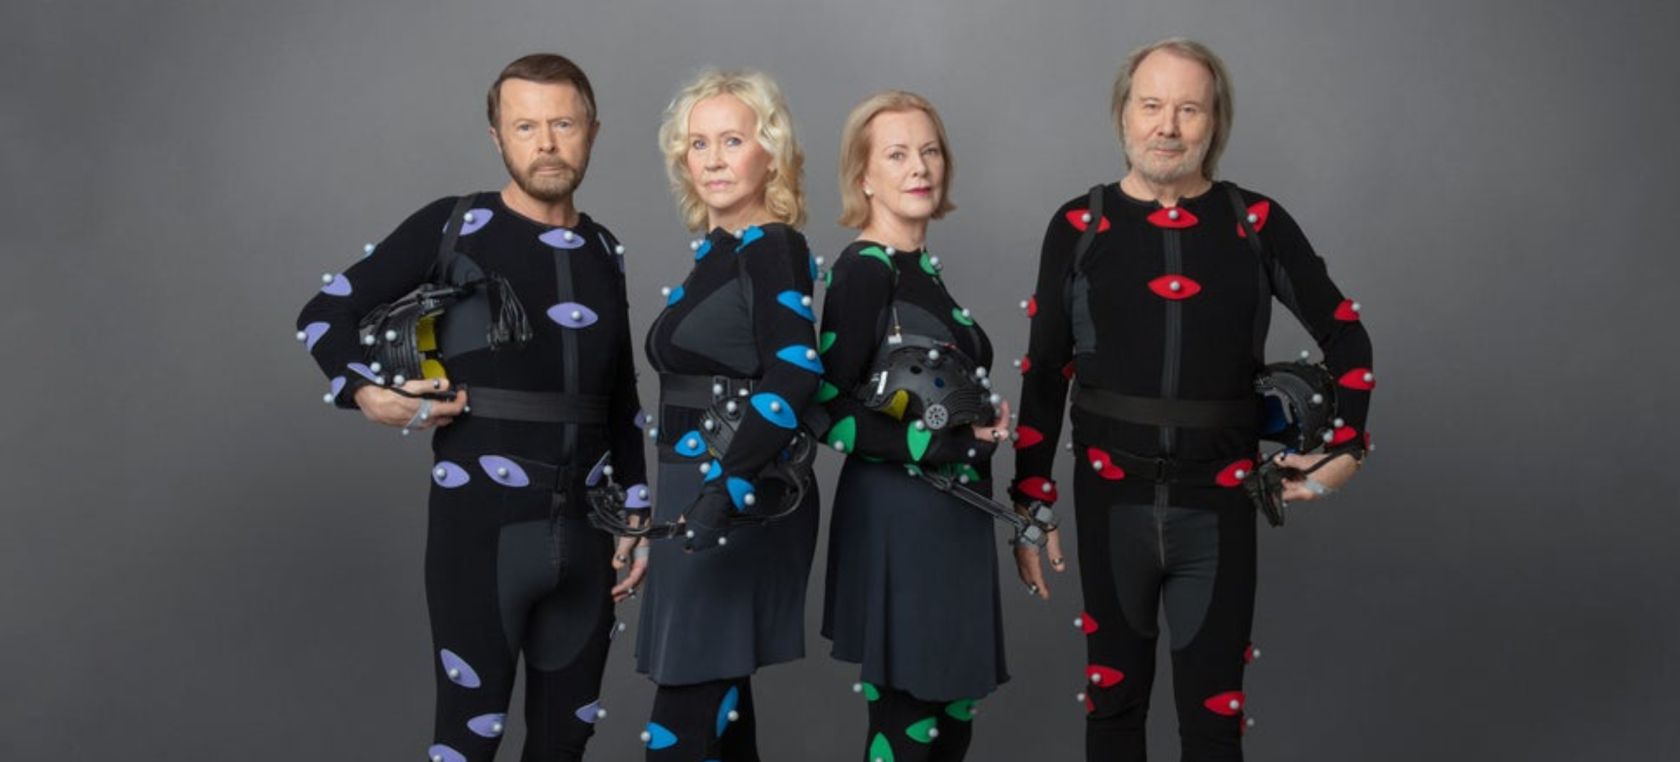 Así será el concierto de hologramas que prepara ABBA en 2022